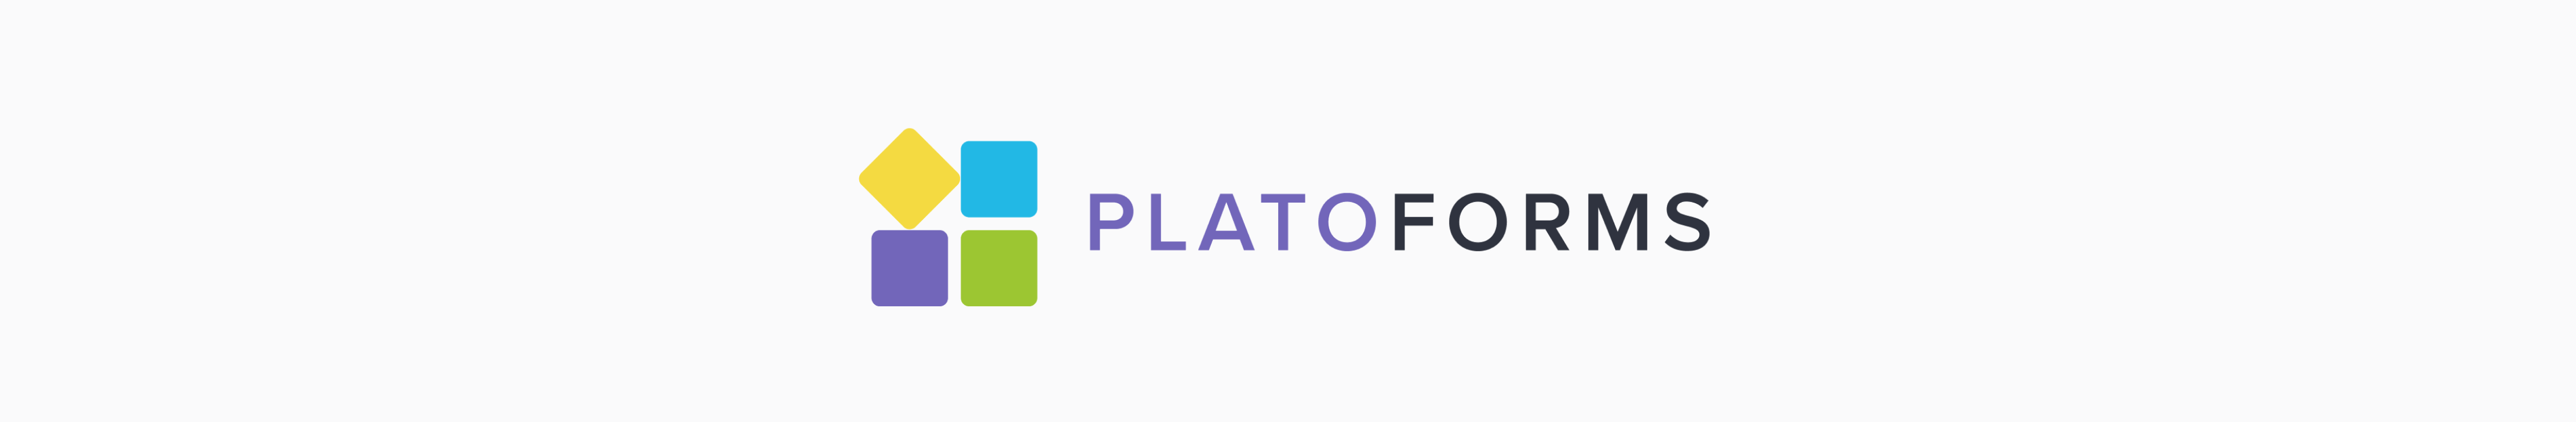 PlatoForms logo